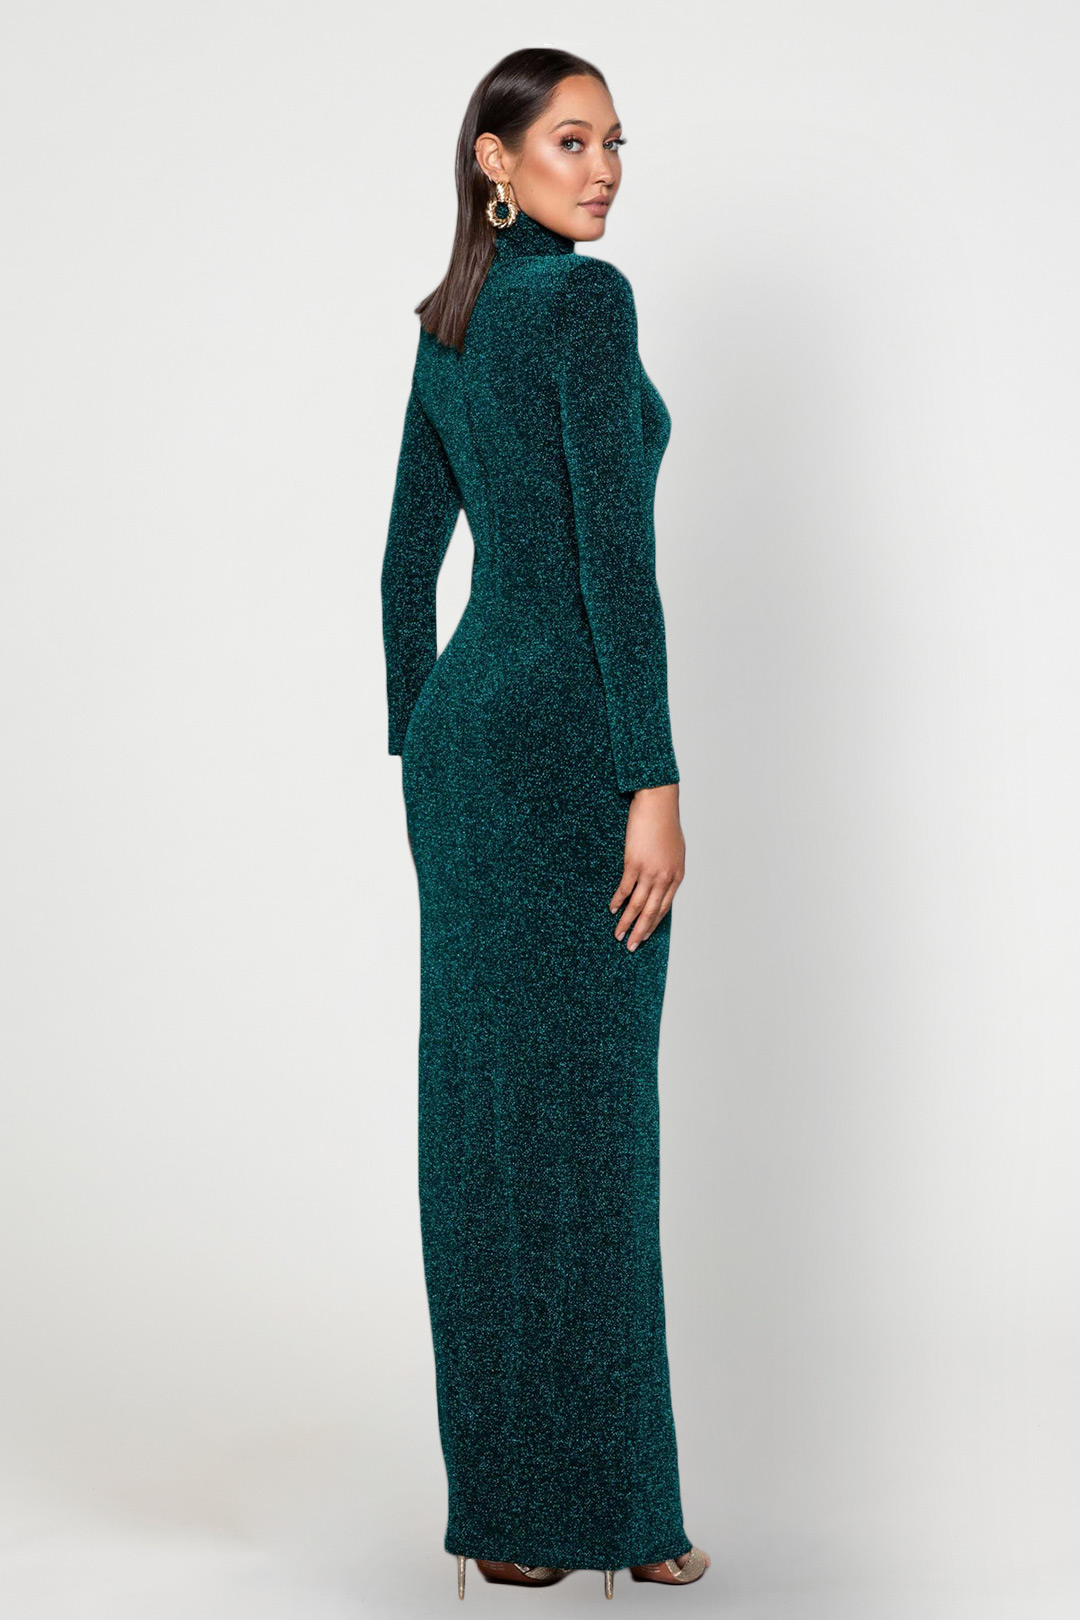 Zinna Emerald Gown- Elle Zeitoune Rent A Dress Dress Rental Evening Gown 5